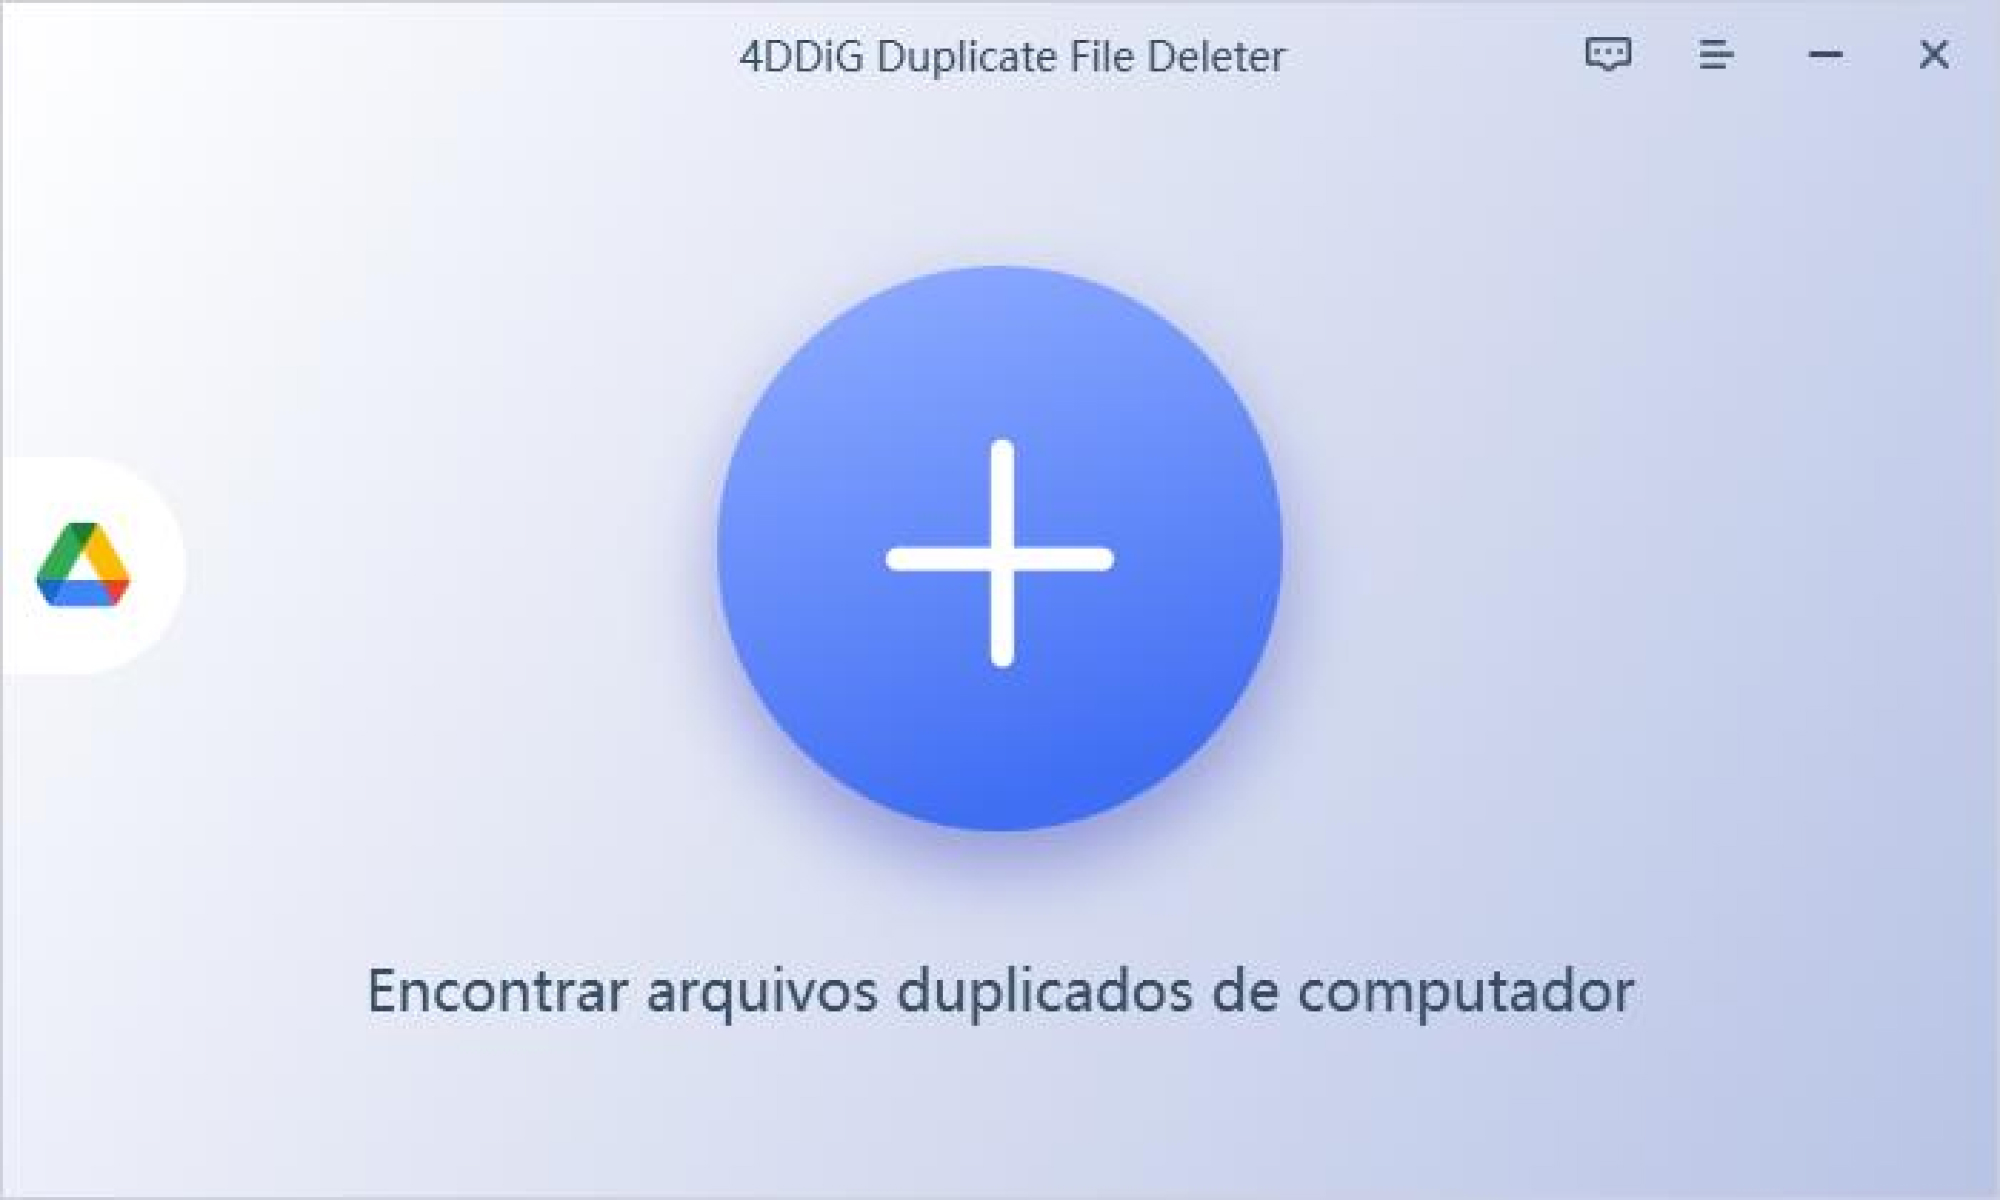 etapa 1 escolha um caminho com 4DDiG Duplicate File Deleter